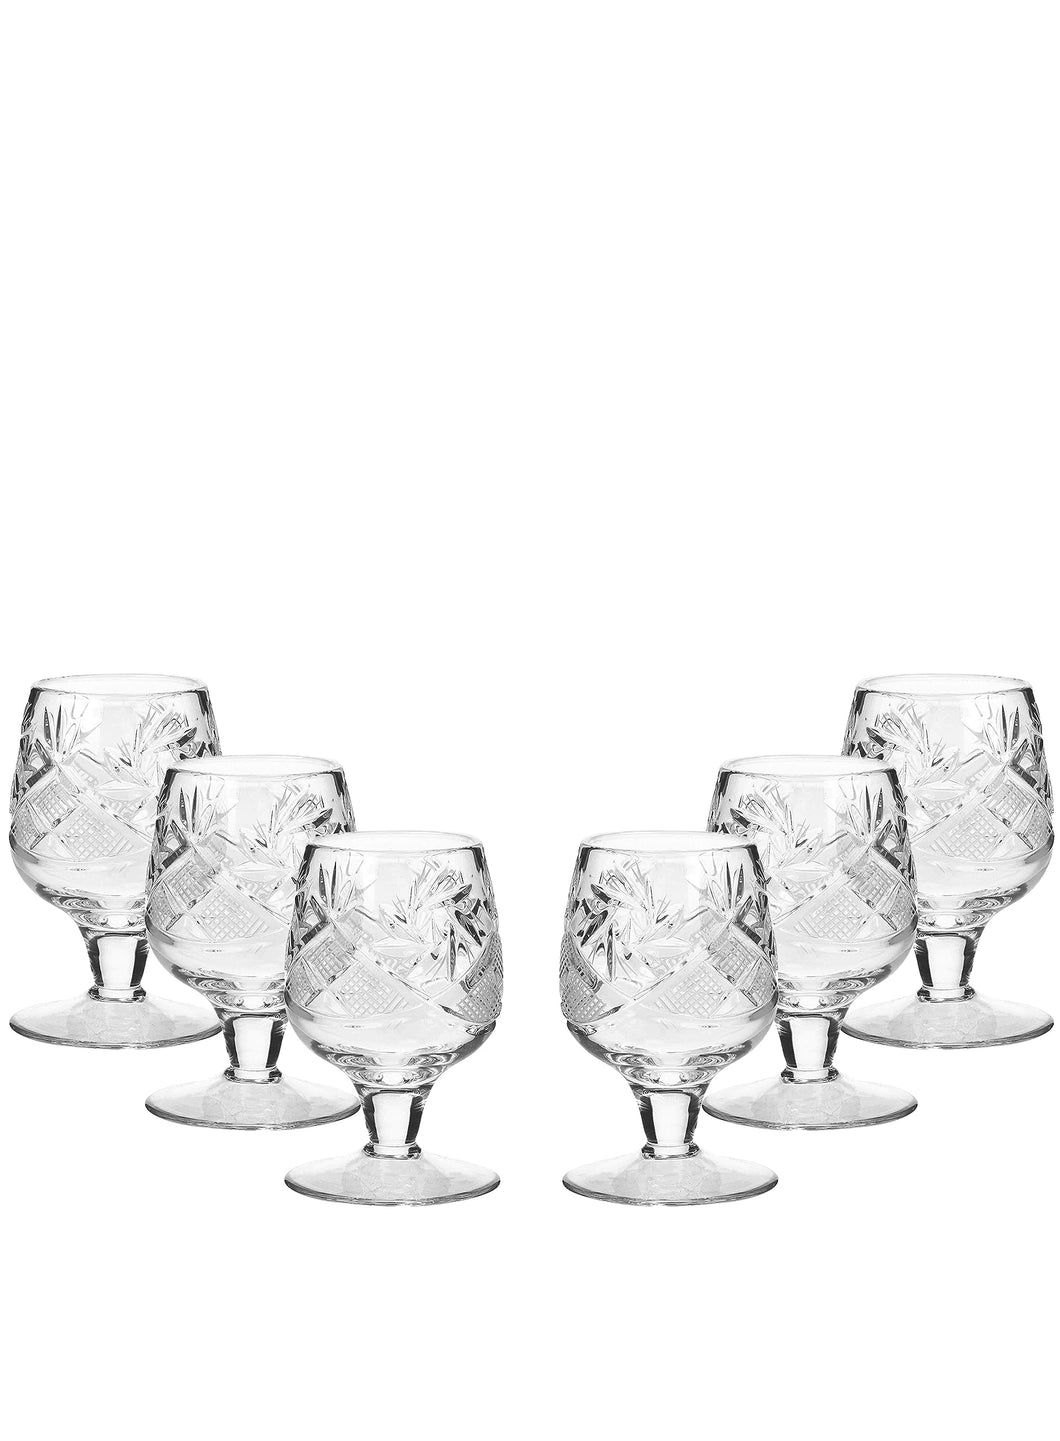 Exquisite 1.5-Oz Handcrafted Crystal Shot Glasses - Stemmed Vodka Glas